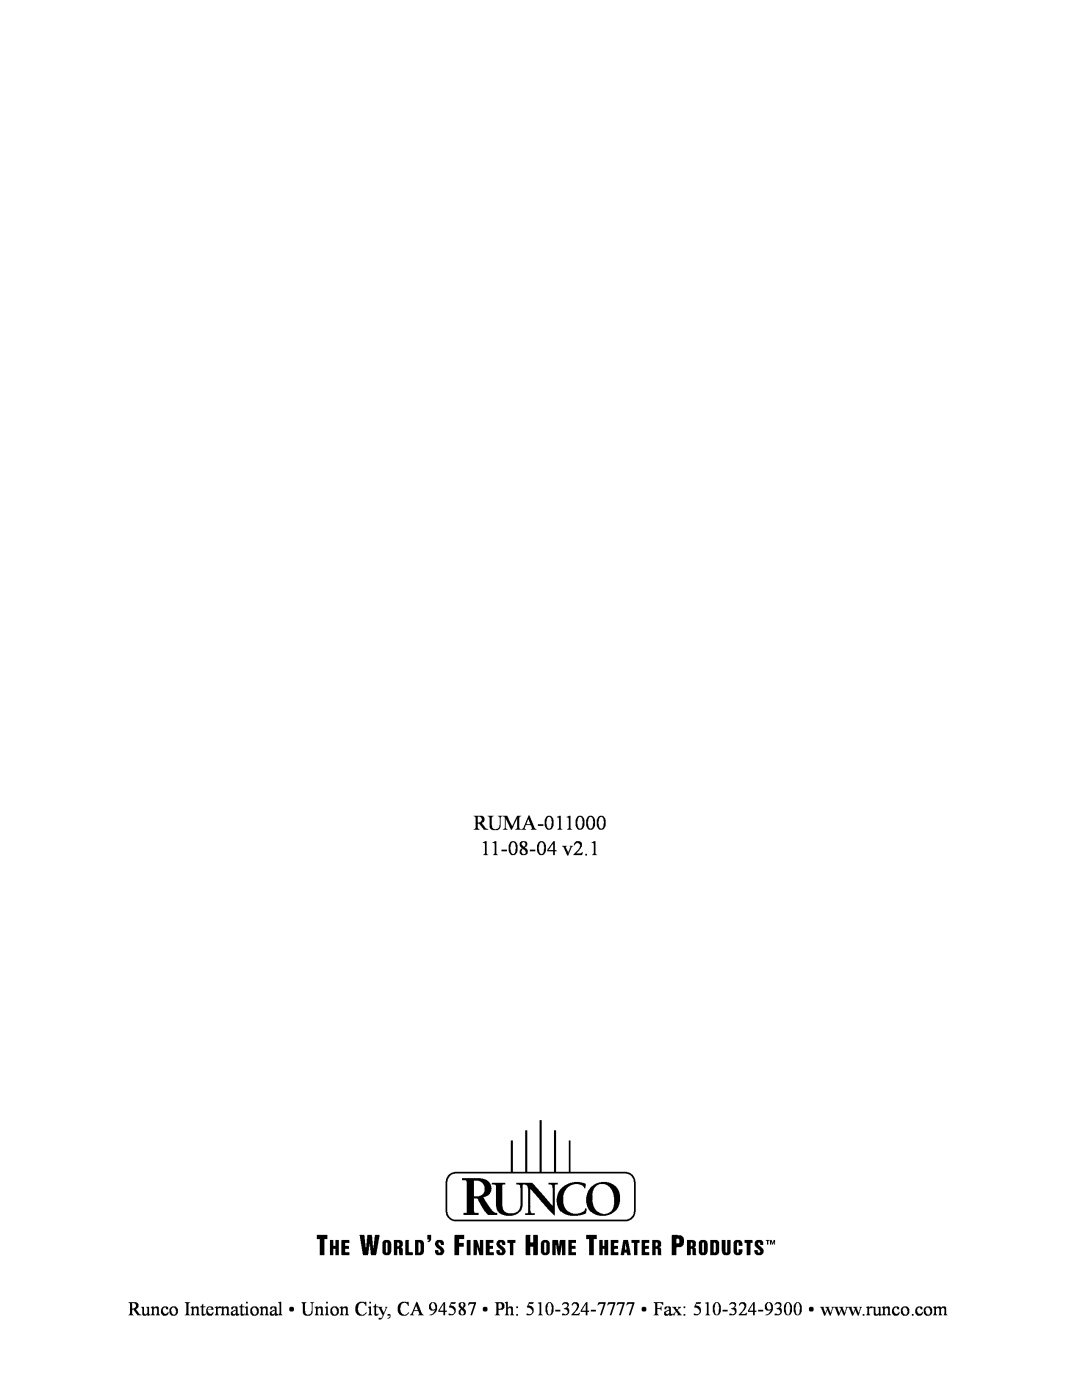 Runco CW-50MC manual RUMA-011000 11-08-04 